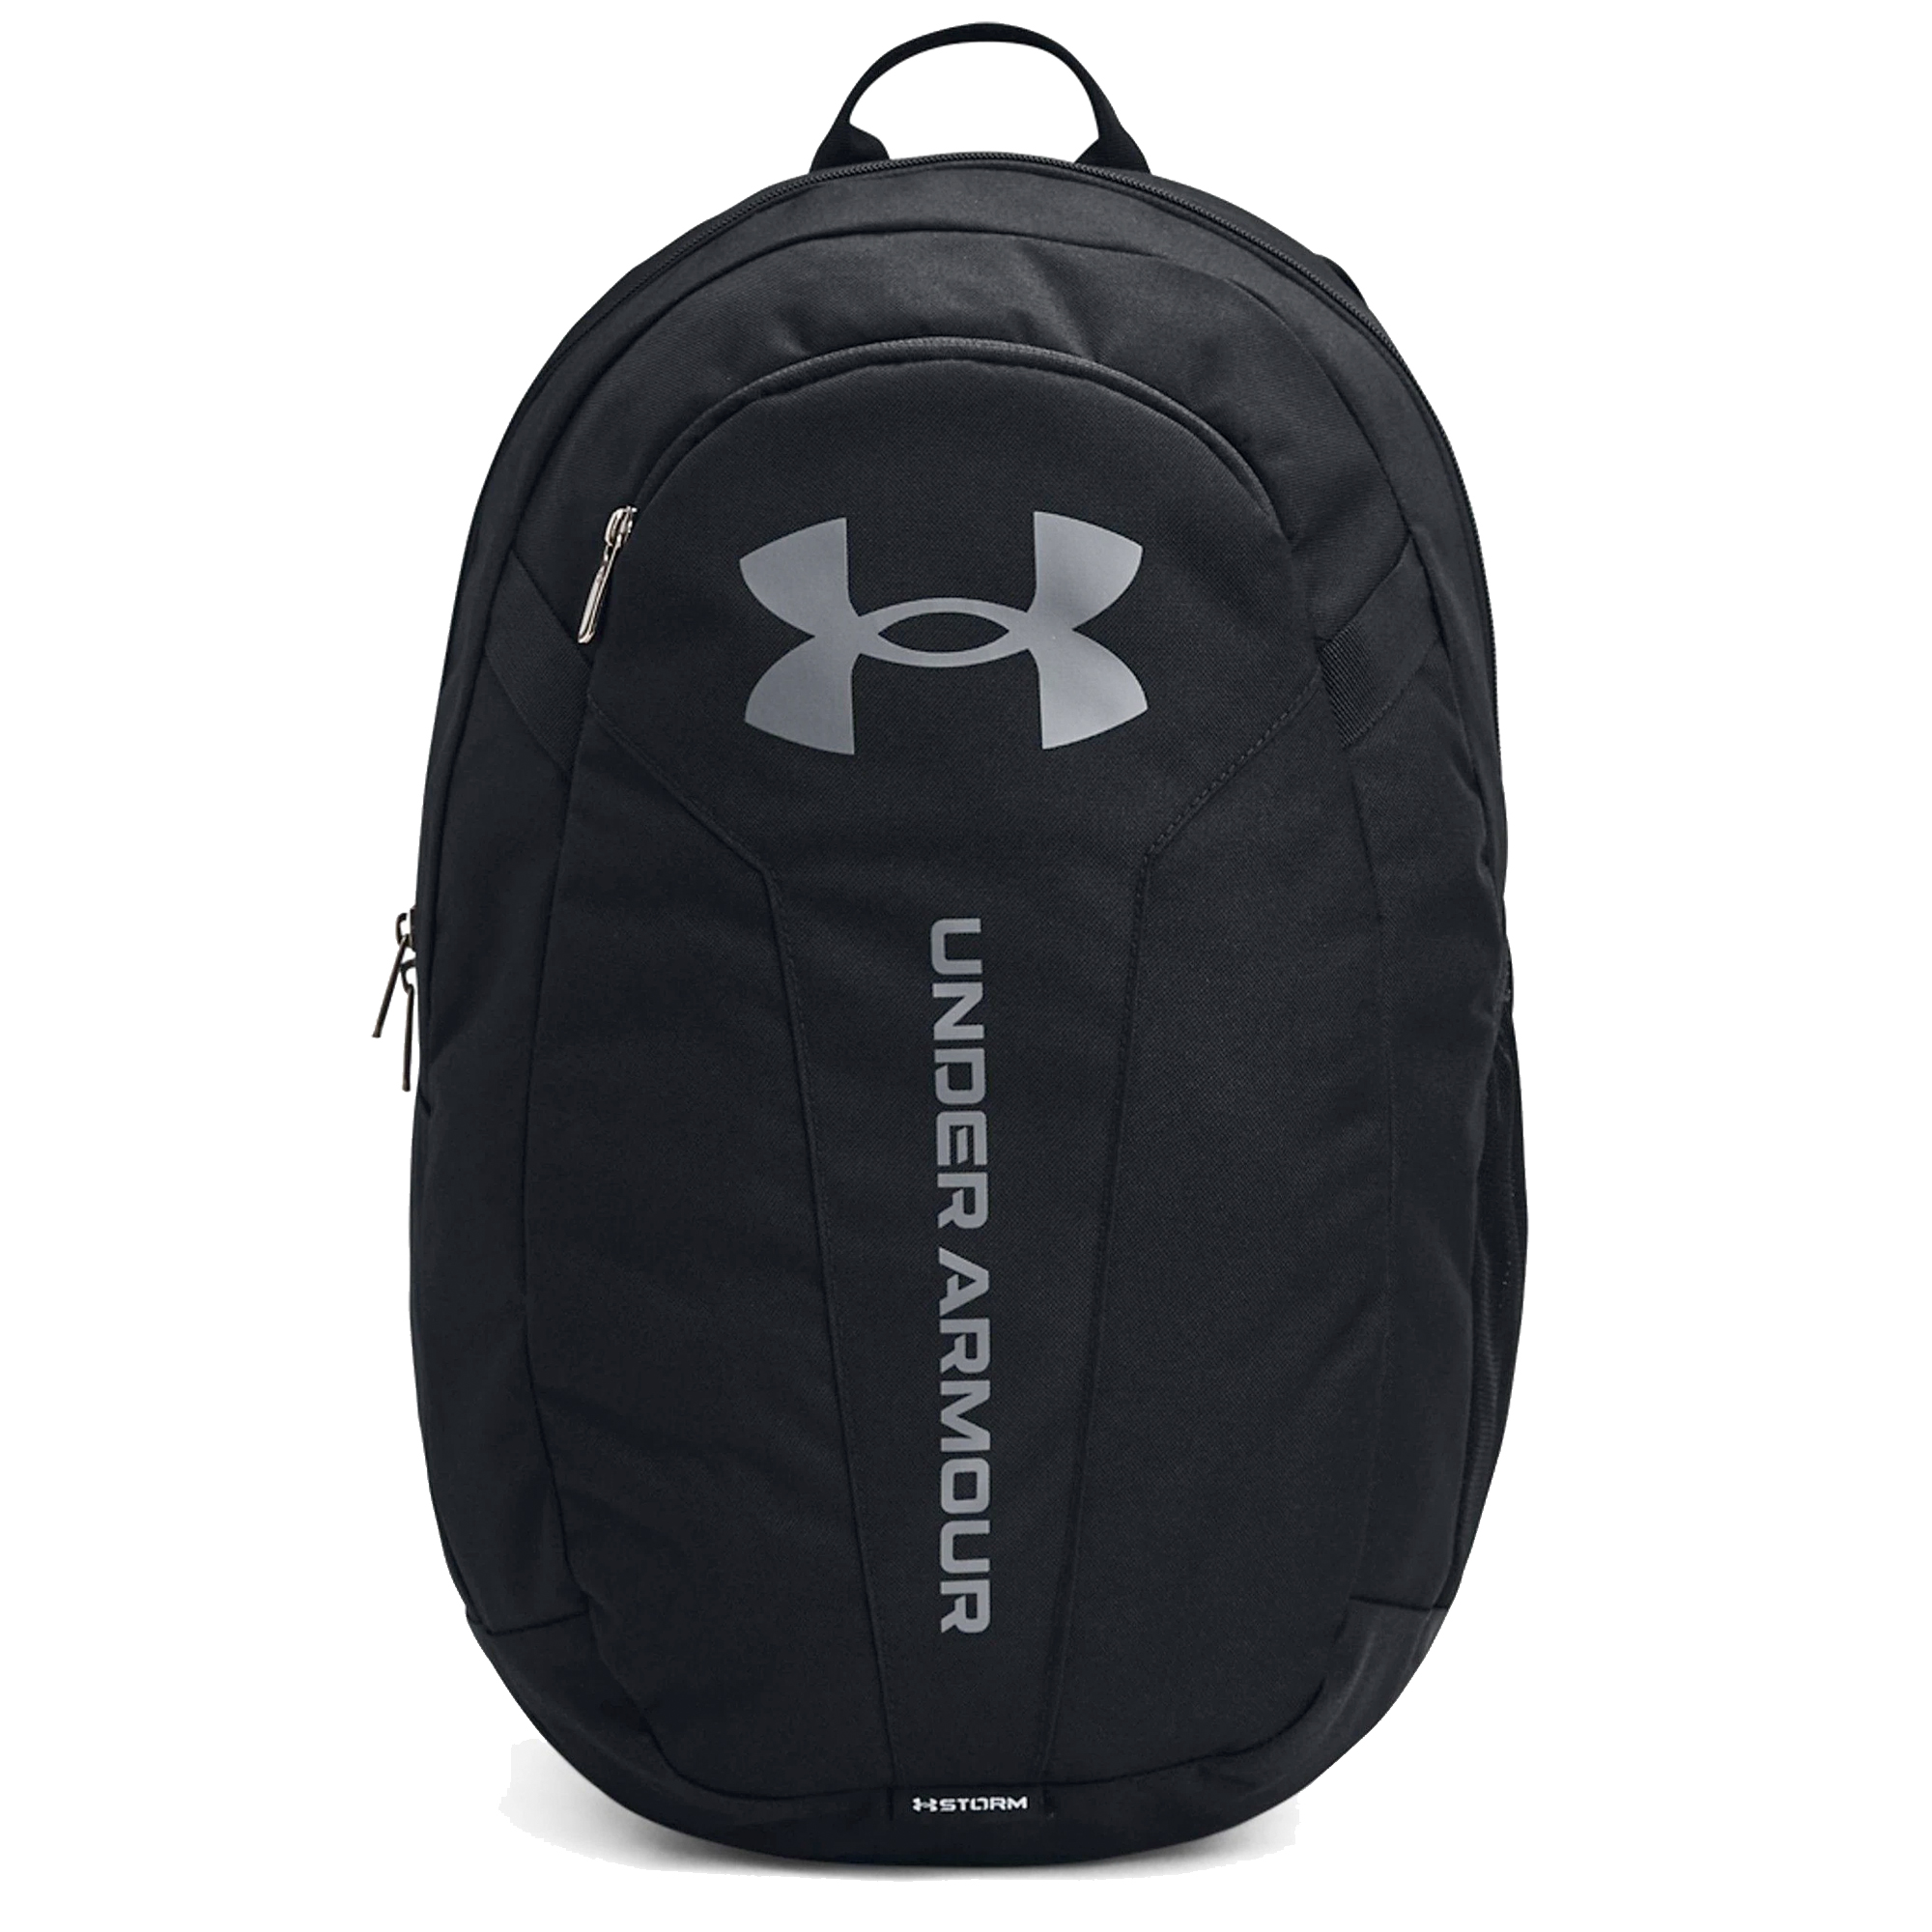 Under Armour Backpack UA Hustle Lite Ruck Gym Travel Rucksack Sports Bag  - Black/Pitch Grey